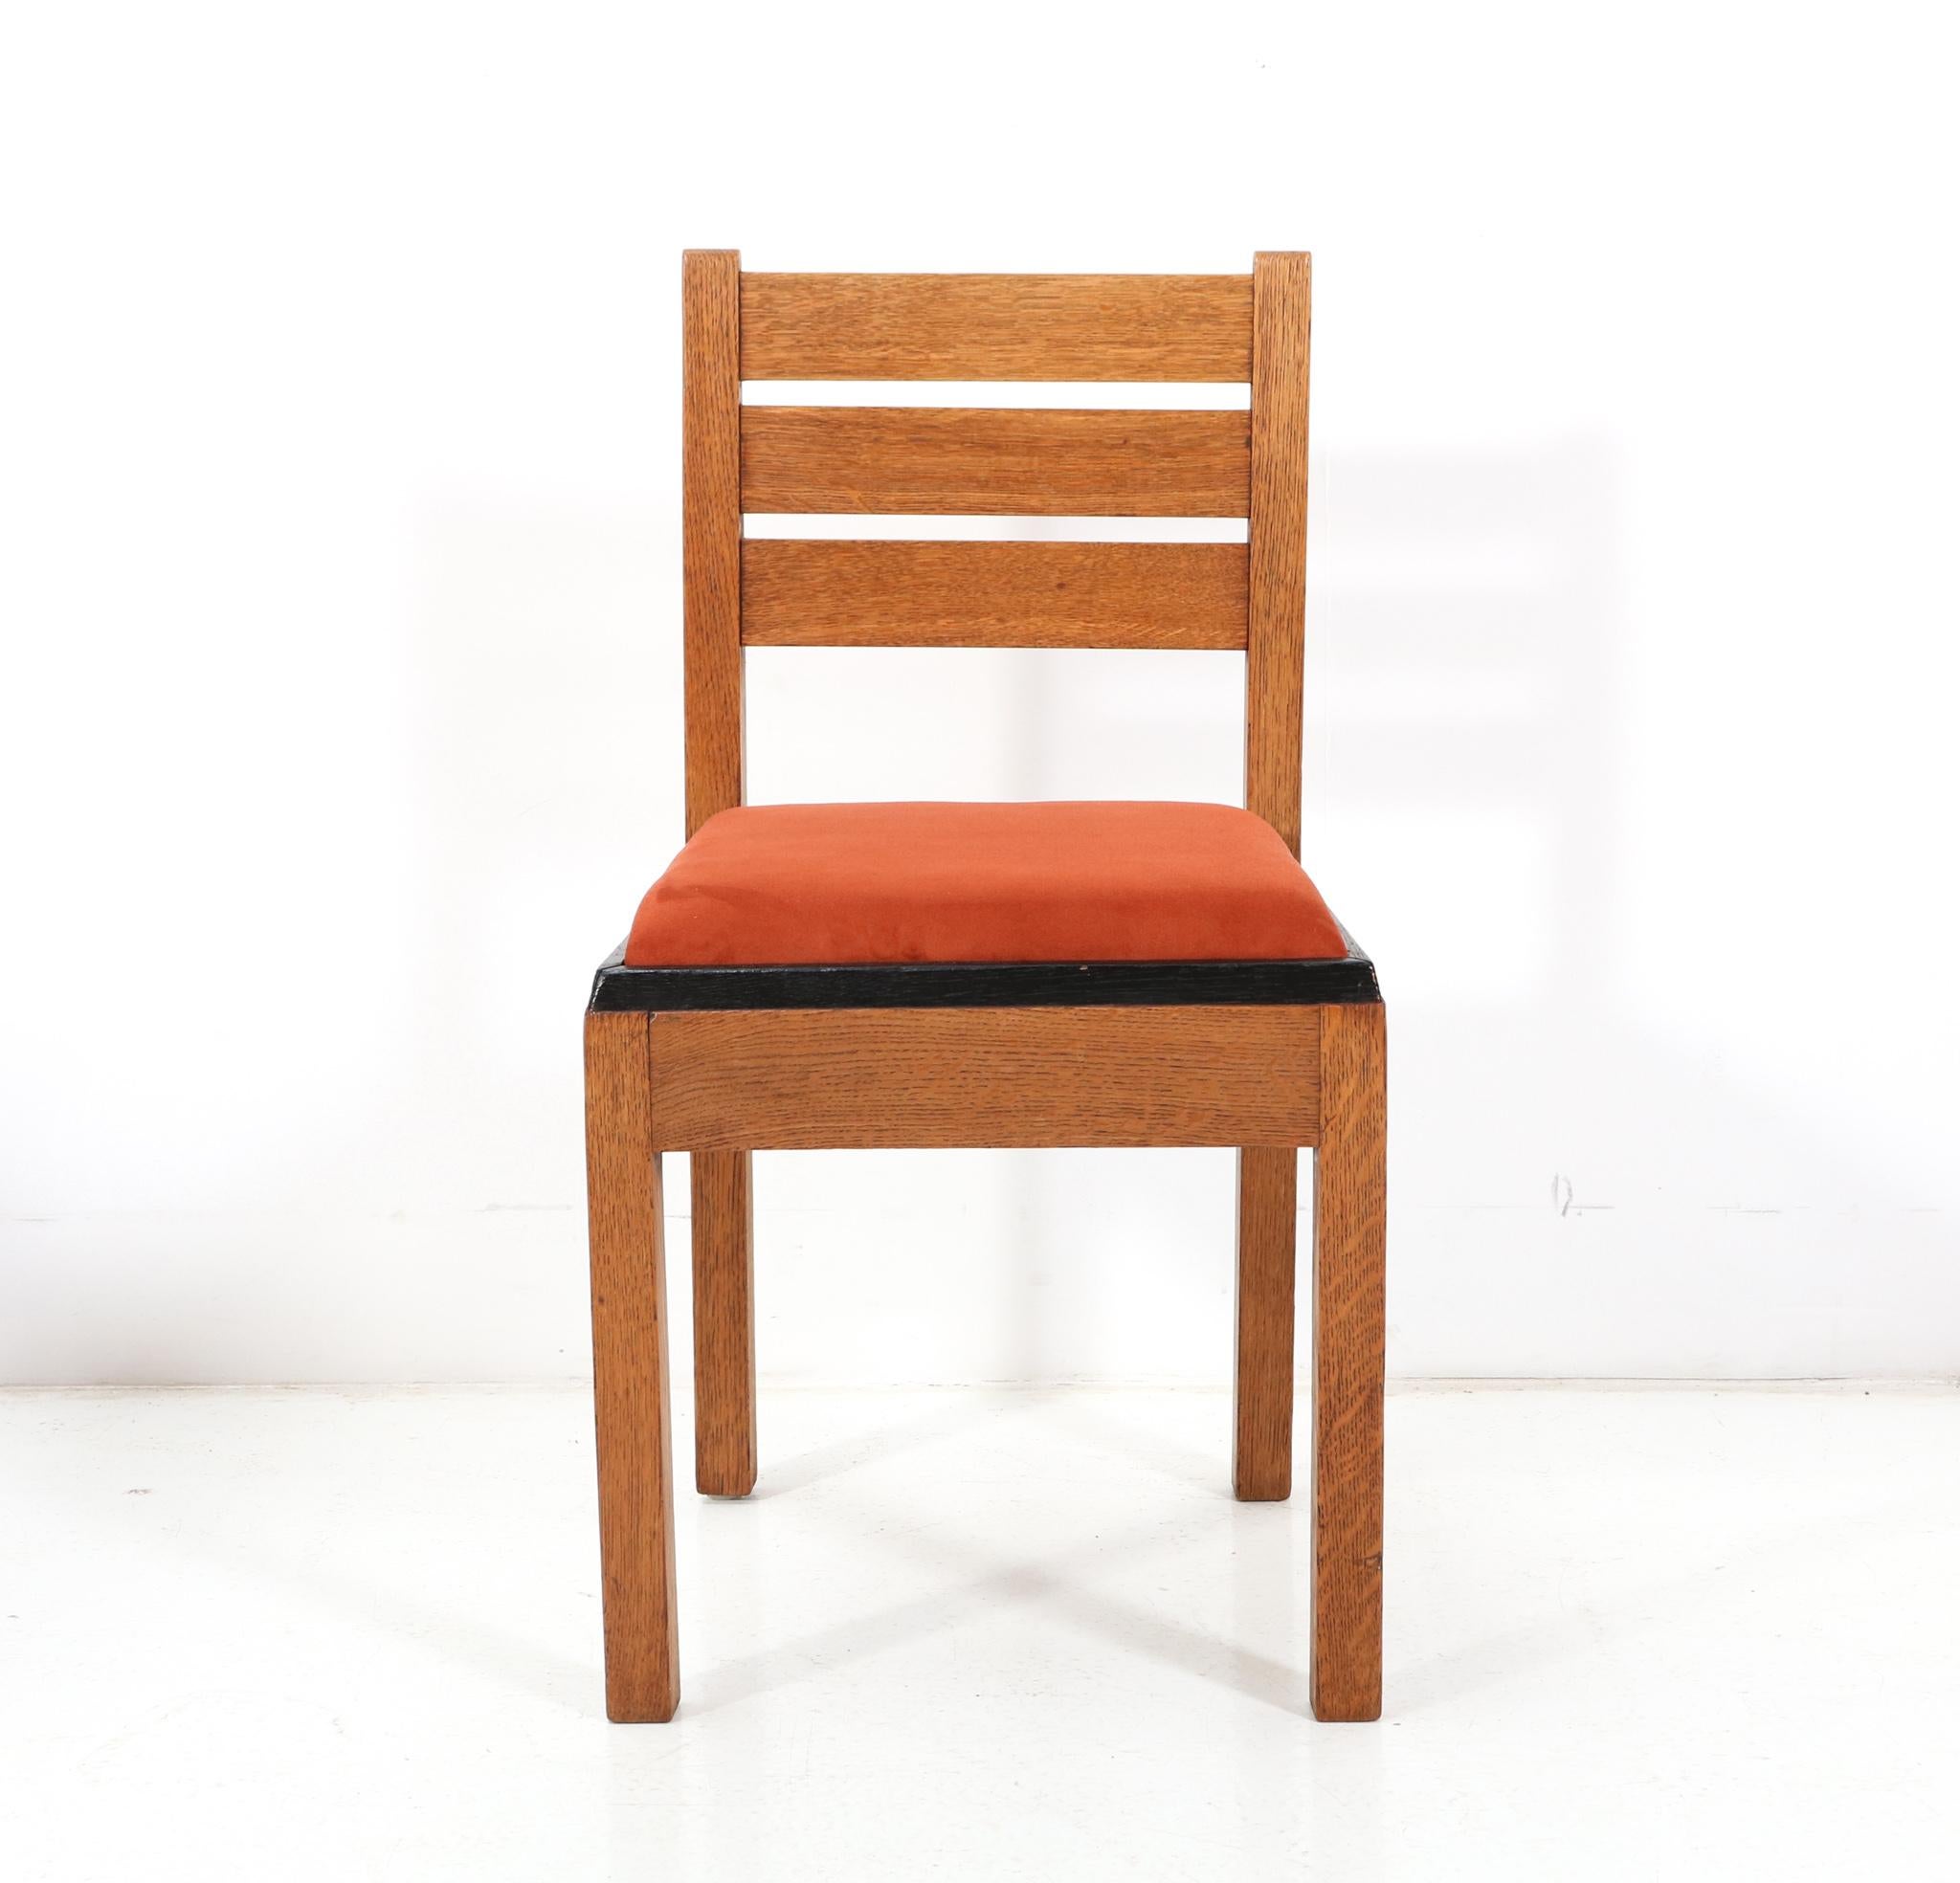 Magnifique et rarissime chaise d'appoint moderniste Art Déco.
Conception par Jan Brunott.
Un design néerlandais saisissant des années 1920.
Cadre en chêne massif avec revêtement d'origine laqué noir.
L'assise a été retapissée avec un tissu de